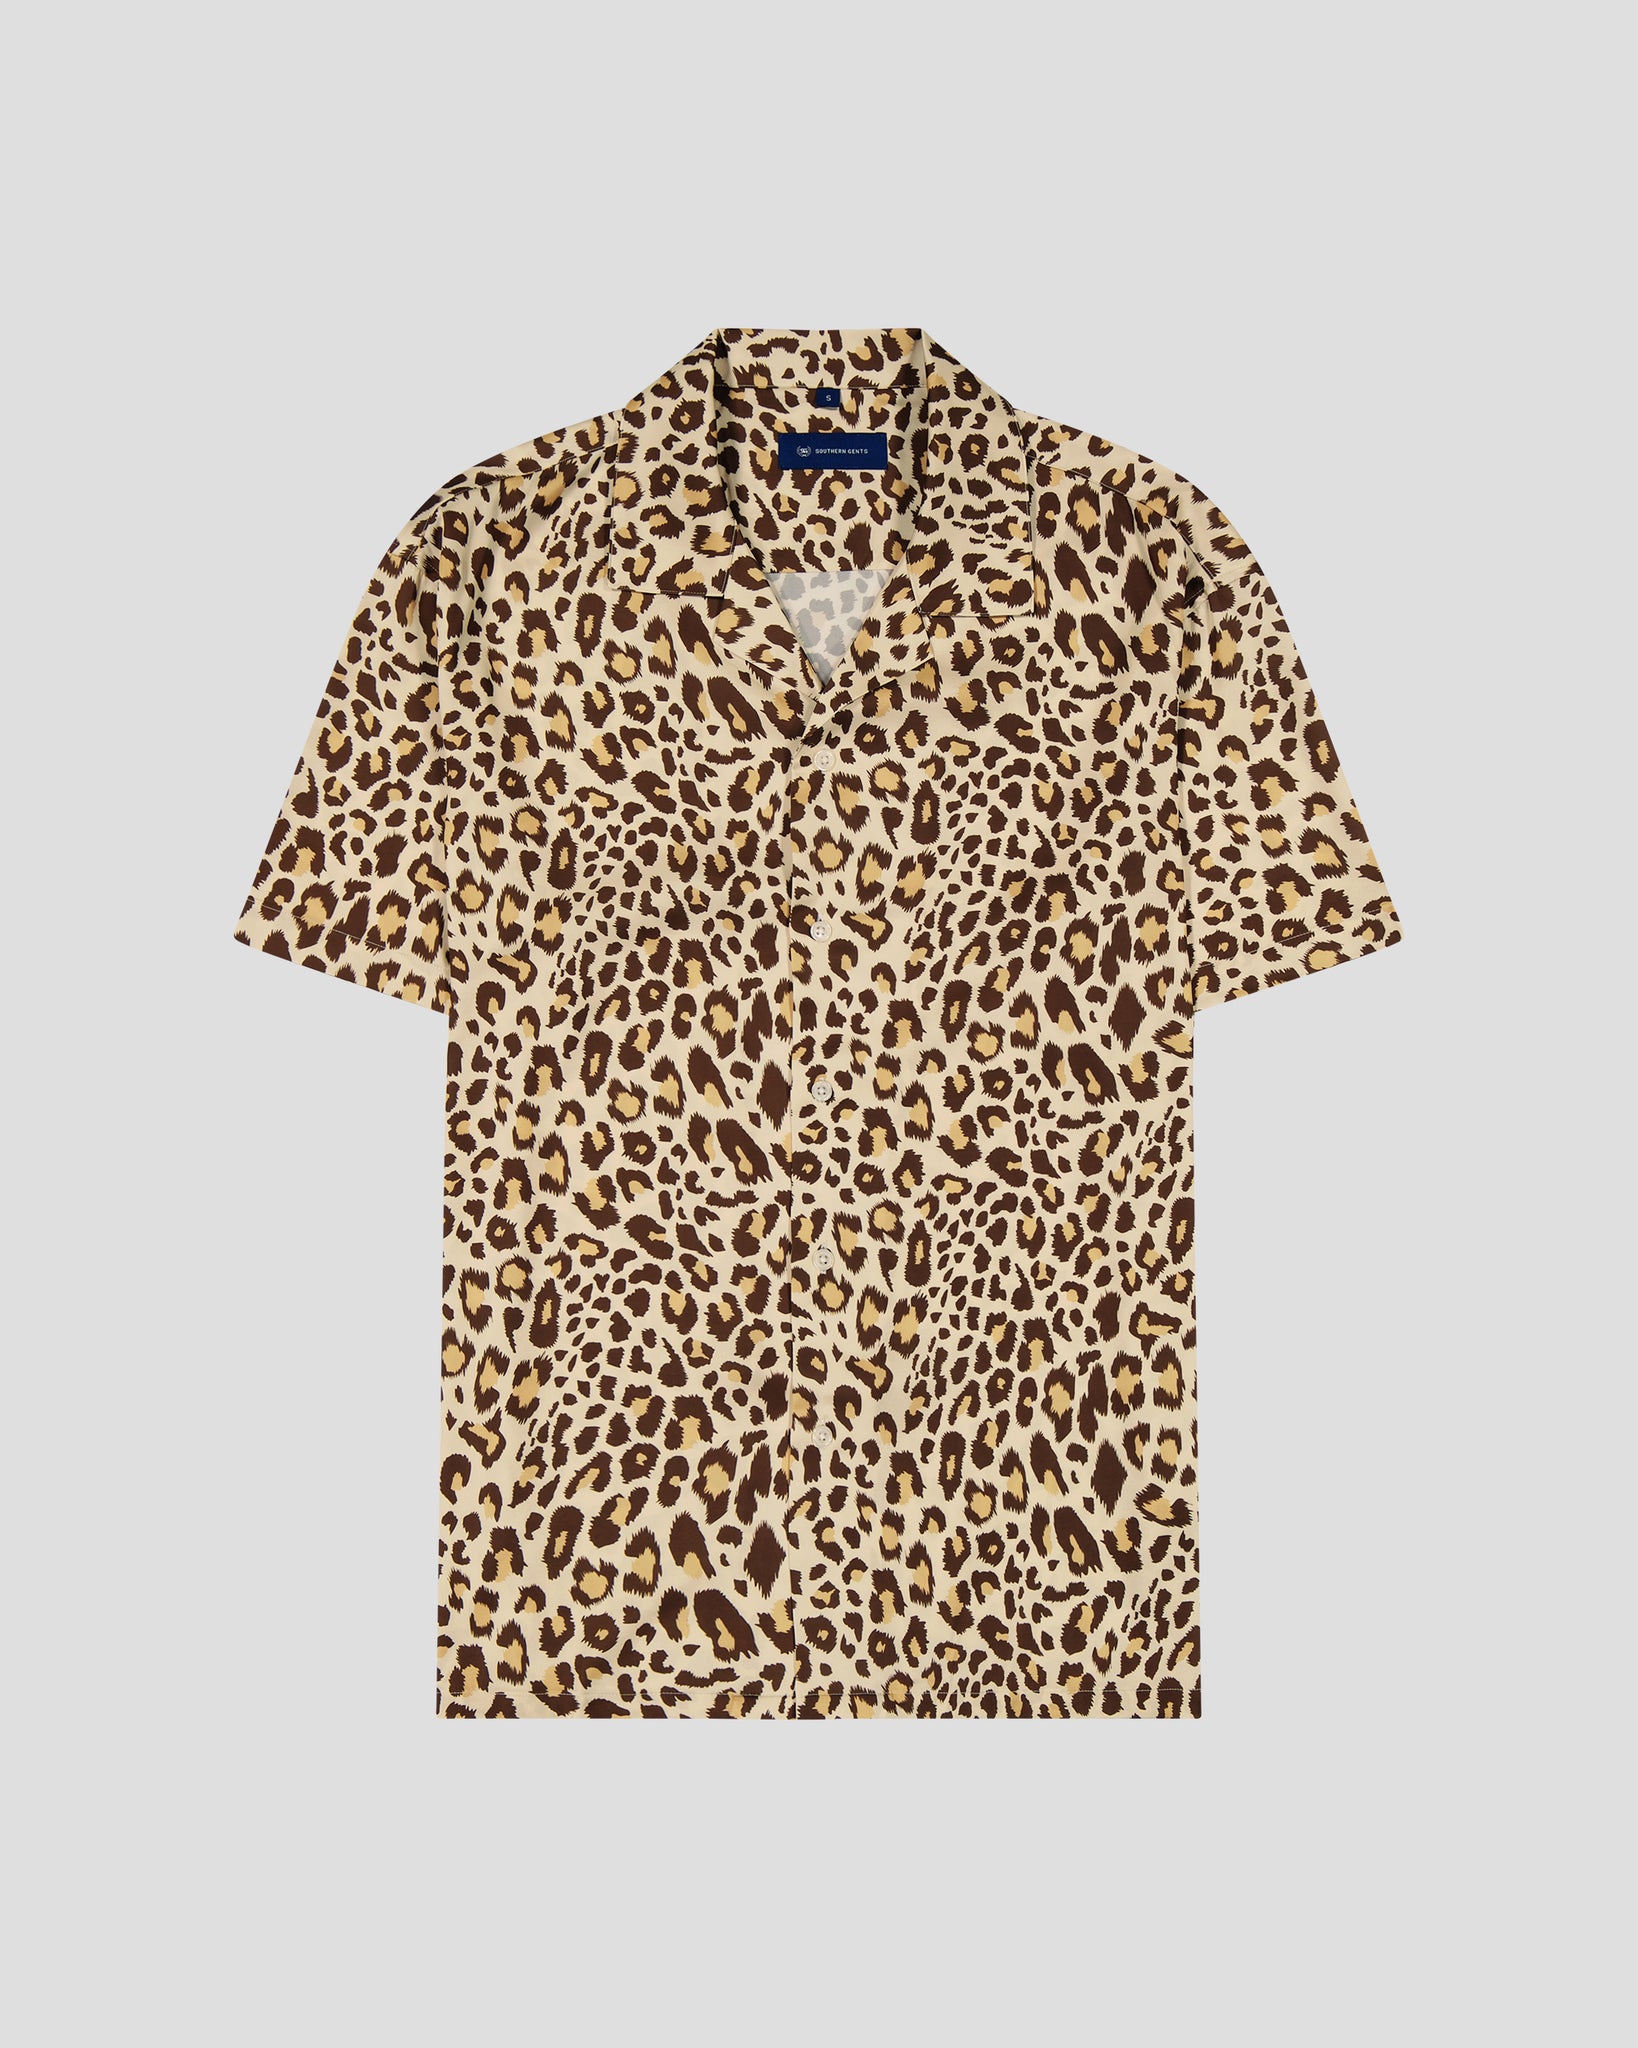 SG Camp Collar Shirt - Jaguar